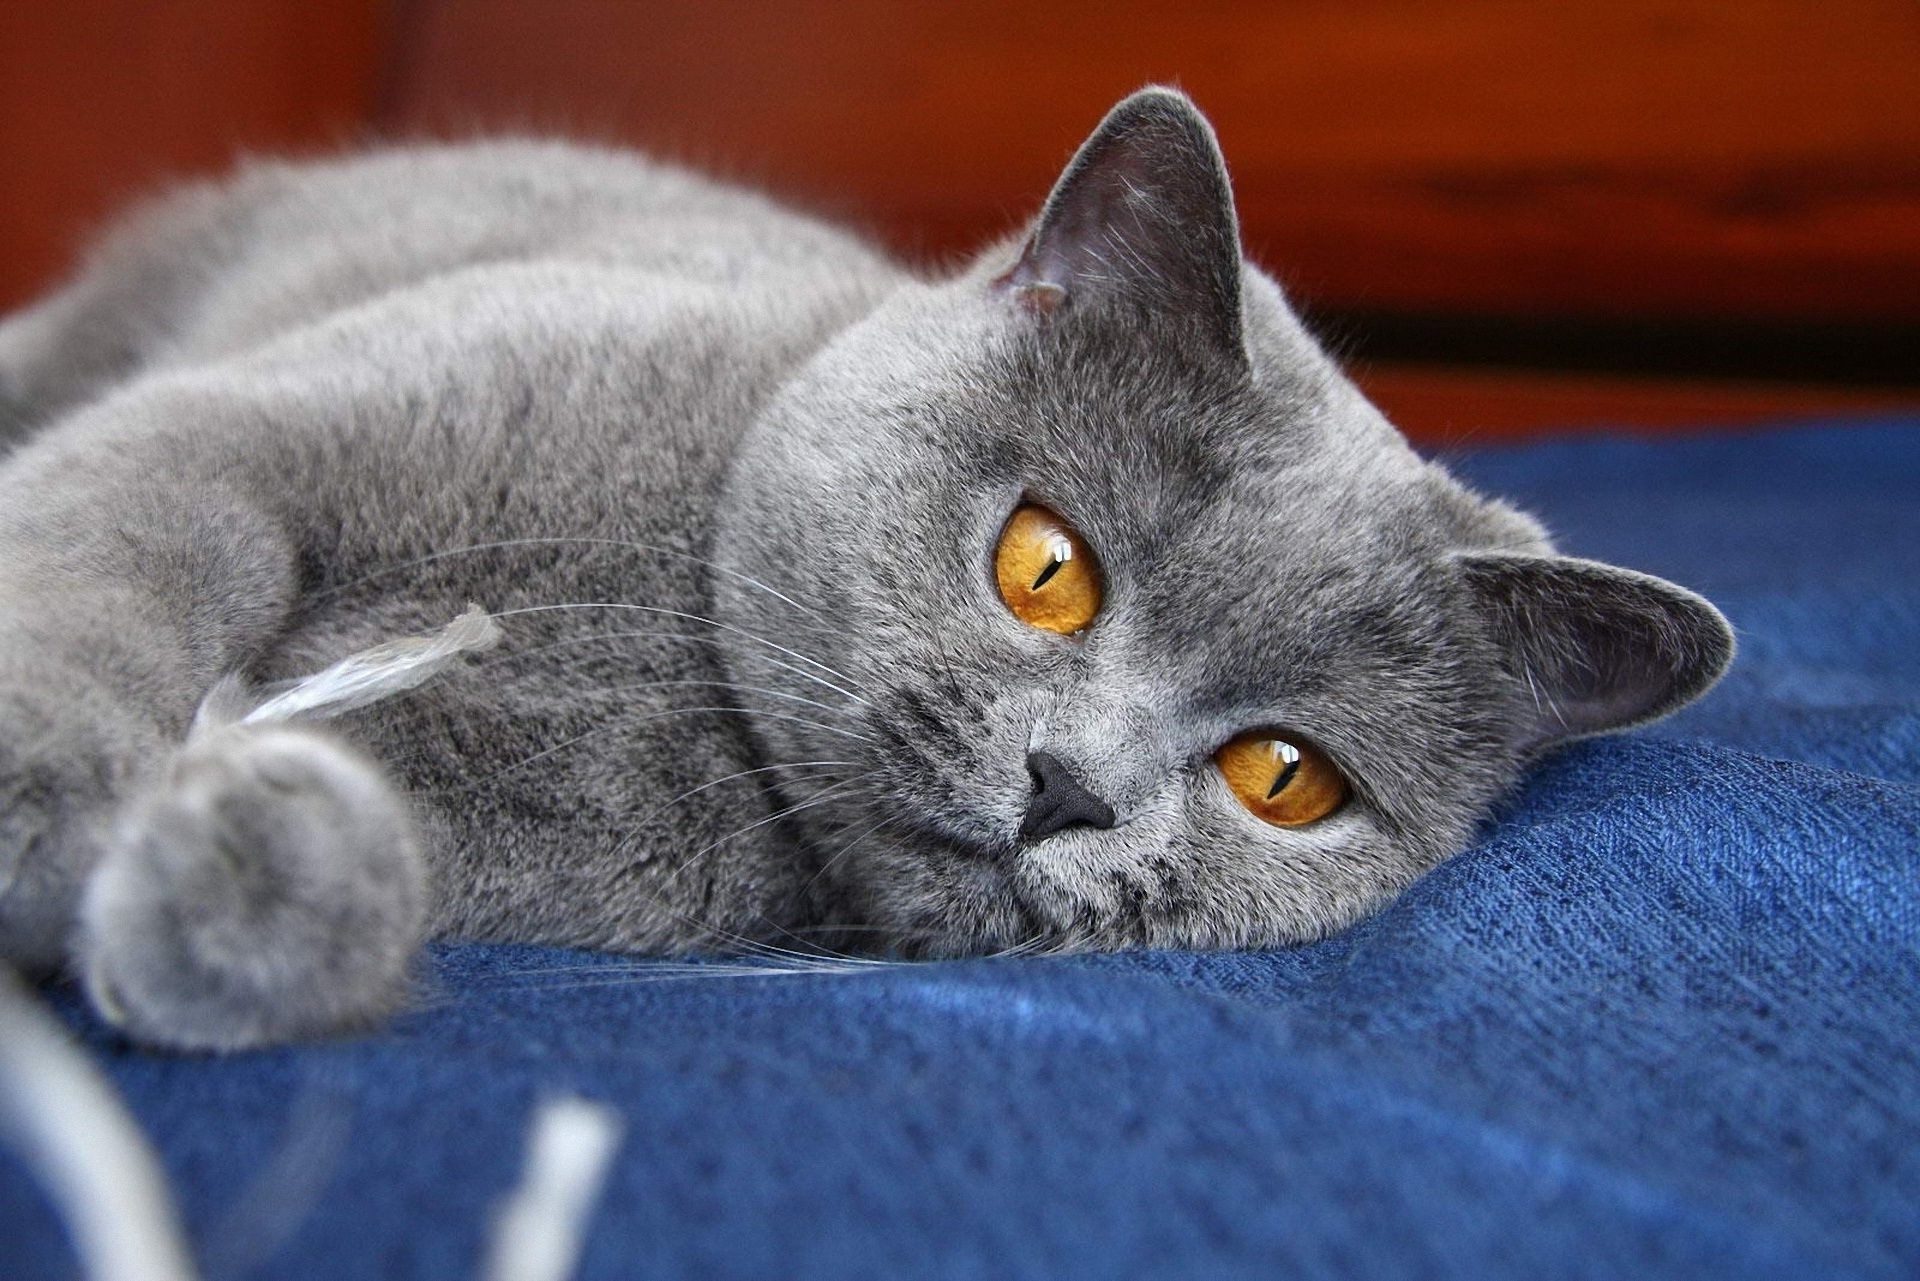 кошки кошка отечественные пэт животное милые пуховый млекопитающее котенок мех портрет серый глаз мало очаровательны один молодой просмотр волосы пушистый сидеть